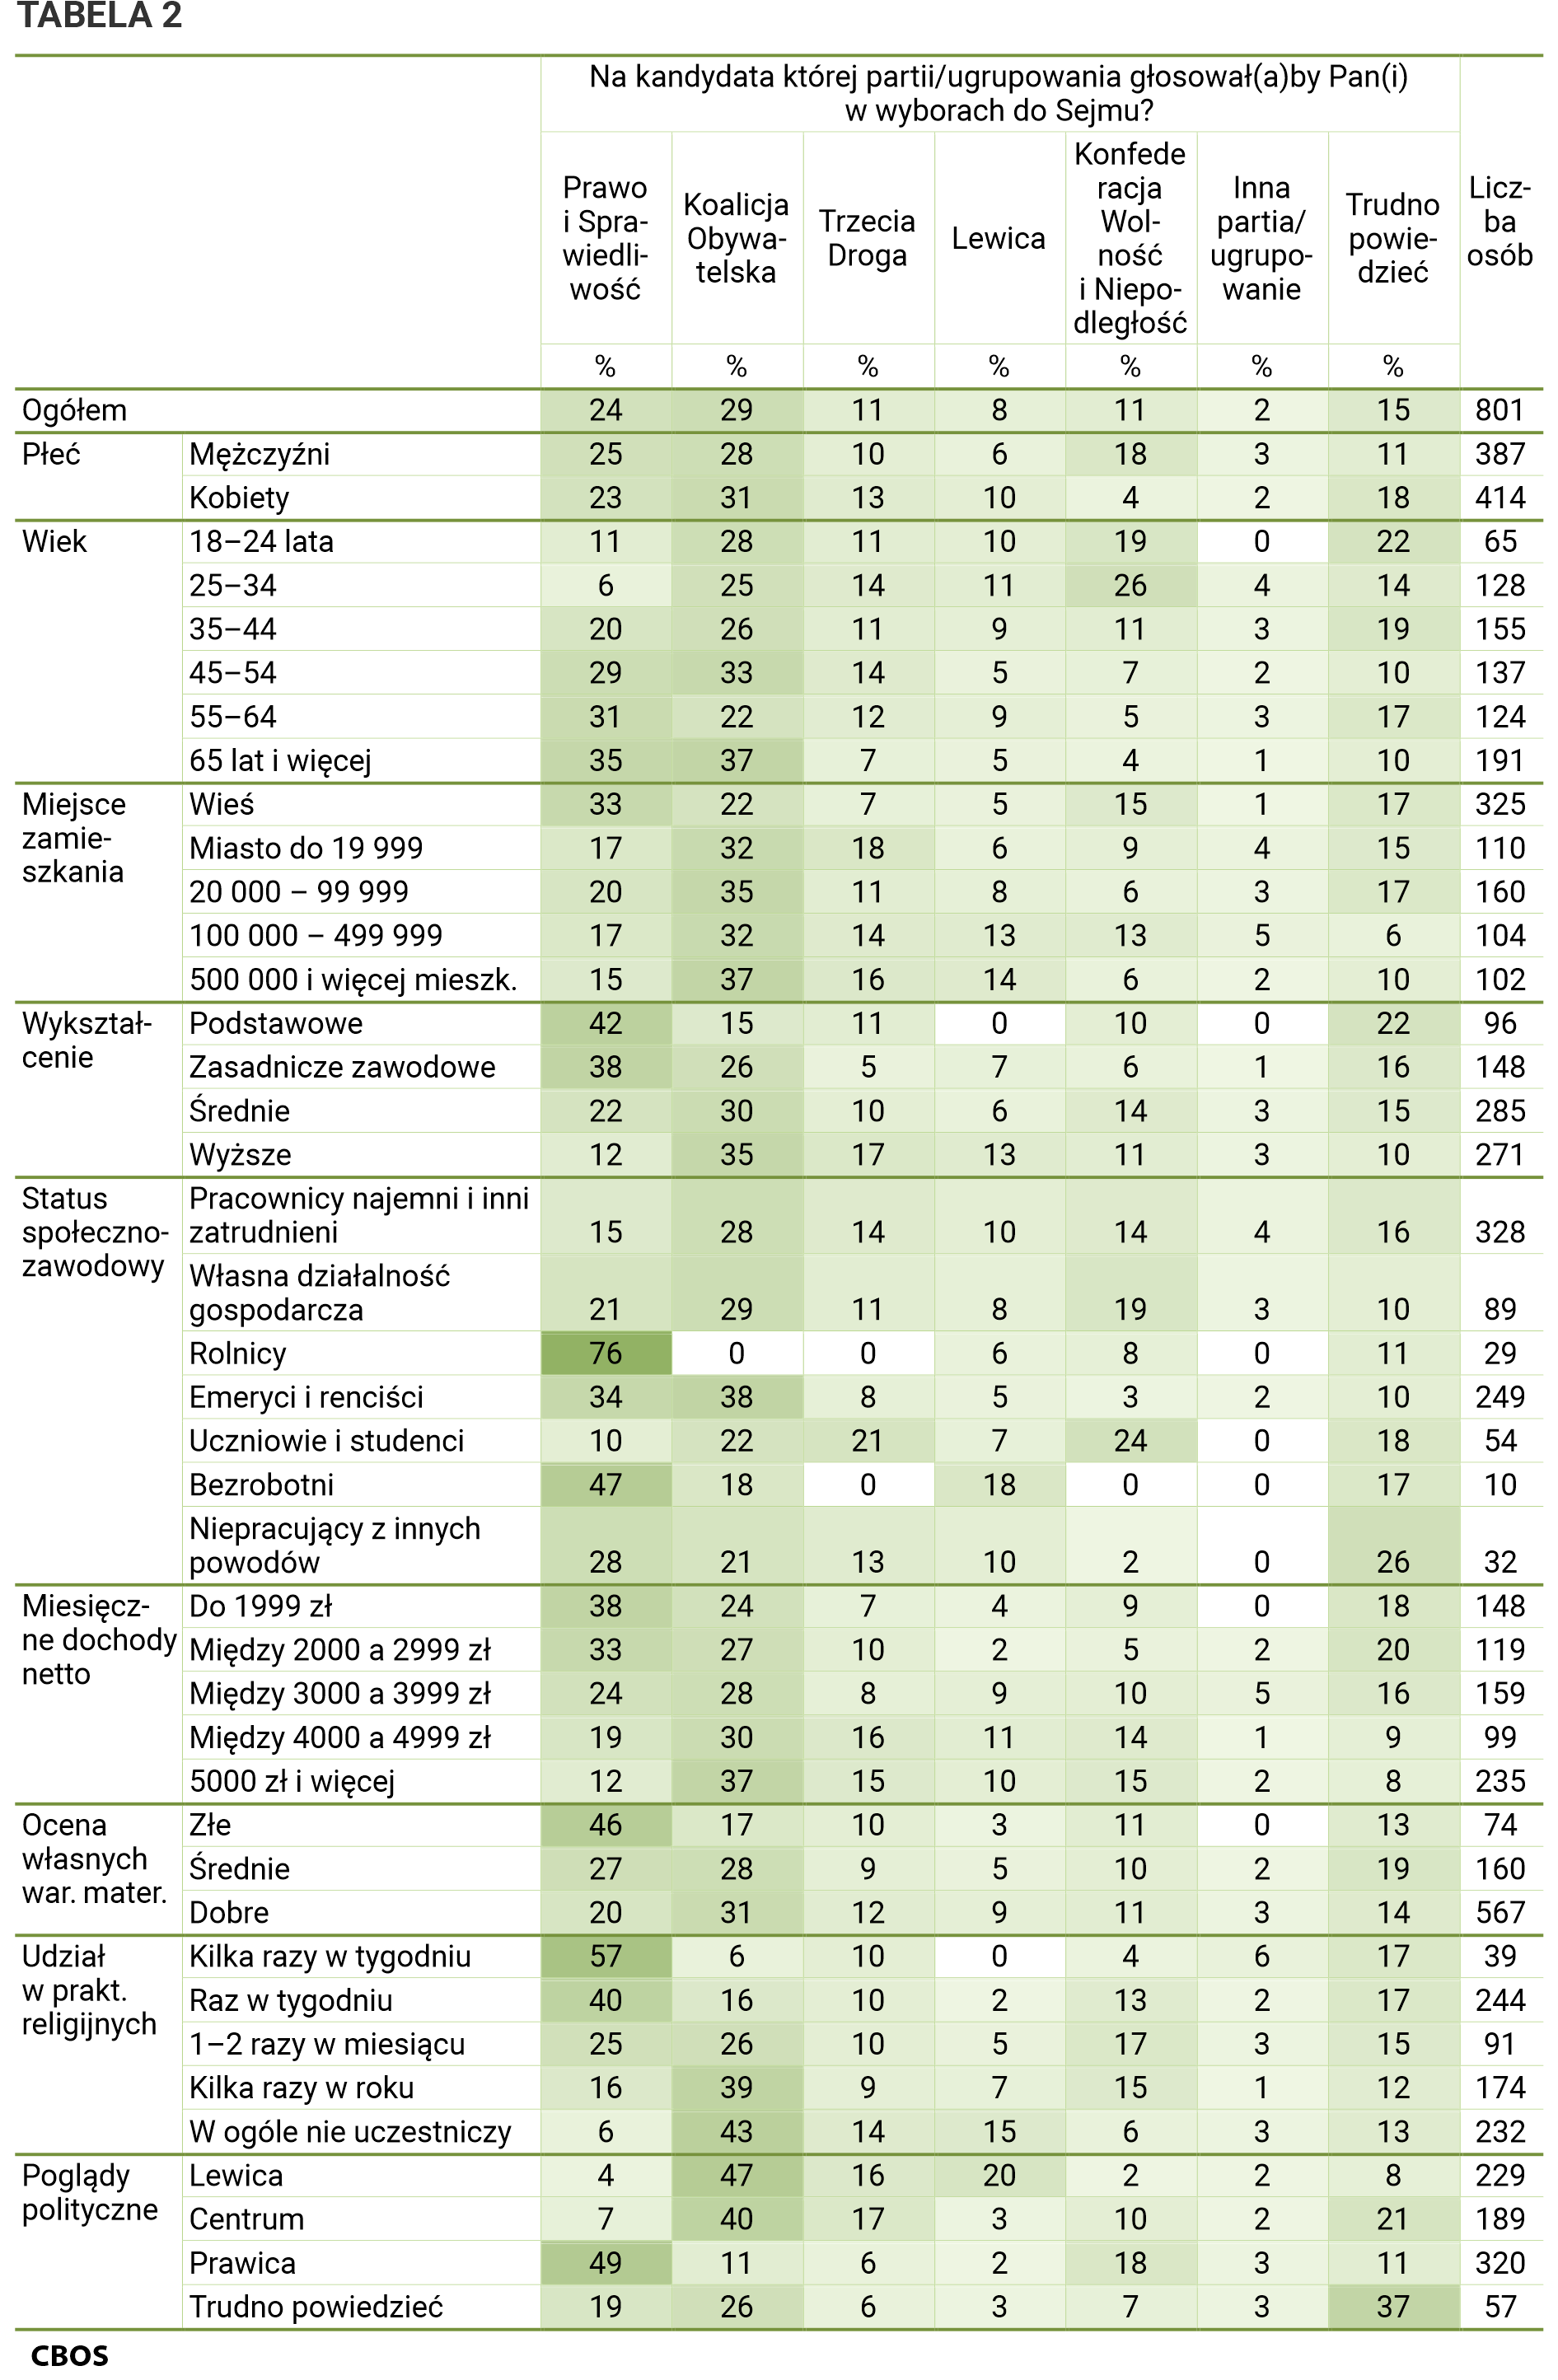 Tabela 2 Na kandydata której partii/ugrupowania głosowałby Pan (głosowałaby Pani) w wyborach do Sejmu? Ogółem: Prawo i Sprawiedliwość - 24%, Koalicja Obywatelska - 29%, Trzecia Droga - 11%, Lewica - 8%, Konfederacja Wolność i Niepodległość - 11%, Inna partia/ugrupowanie - 2%, Trudno powiedzieć - 15%, Liczba osób - 801; Płeć Mężczyźni: Prawo i Sprawiedliwość - 25%, Koalicja Obywatelska - 28%, Trzecia Droga - 10%, Lewica - 6%, Konfederacja Wolność i Niepodległość - 18%, Inna partia/ugrupowanie - 3%, Trudno powiedzieć - 11%, Liczba osób - 387;  Kobiety: Prawo i Sprawiedliwość - 23%, Koalicja Obywatelska - 31%, Trzecia Droga - 13%, Lewica - 10%, Konfederacja Wolność i Niepodległość - 4%, Inna partia/ugrupowanie - 2%, Trudno powiedzieć - 18%, Liczba osób - 414; Wiek:  18–24 lata: Prawo i Sprawiedliwość - 11%, Koalicja Obywatelska - 28%, Trzecia Droga - 11%, Lewica - 10%, Konfederacja Wolność i Niepodległość - 19%, Inna partia/ugrupowanie - 0%, Trudno powiedzieć - 22%, Liczba osób - 65; 25–34 lata: Prawo i Sprawiedliwość - 6%, Koalicja Obywatelska - 25%, Trzecia Droga - 14 %, Lewica - 11%, Konfederacja Wolność i Niepodległość - 26%, Inna partia/ugrupowanie - 4%, Trudno powiedzieć - 14%, Liczba osób - 128; 35–44: Prawo i Sprawiedliwość - 20%, Koalicja Obywatelska - 26%, Trzecia Droga - 11%, Lewica - 9%, Konfederacja Wolność i Niepodległość - 11%, Inna partia/ugrupowanie - 3%, Trudno powiedzieć - 19%, Liczba osób - 155; 45–54: Prawo i Sprawiedliwość - 29%, Koalicja Obywatelska - 33%, Trzecia Droga - 14%, Lewica - 5%, Konfederacja Wolność i Niepodległość - 7%, Inna partia/ugrupowanie - 2%, Trudno powiedzieć - 10%, Liczba osób - 137; 55–64: Prawo i Sprawiedliwość - 31%, Koalicja Obywatelska - 22%, Trzecia Droga - 12%, Lewica - 9%, Konfederacja Wolność i Niepodległość - 5%, Inna partia/ugrupowanie - 3%, Trudno powiedzieć - 17%, Liczba osób - 124; 65 lat i więcej: Prawo i Sprawiedliwość - 35%, Koalicja Obywatelska - 37%, Trzecia Droga - 7%, Lewica - 5%, Konfederacja Wolność i Niepodległość - 4%, Inna partia/ugrupowanie - 1%, Trudno powiedzieć - 10%, Liczba osób - 191; Miejsce zamieszkania: Wieś: Prawo i Sprawiedliwość - 33%, Koalicja Obywatelska - 22%, Trzecia Droga - 7%, Lewica - 5%, Konfederacja Wolność i Niepodległość - 15%, Inna partia/ugrupowanie - 1%, Trudno powiedzieć - 17%, Liczba osób - 325; Miasto do 19 999: Prawo i Sprawiedliwość - 17%, Koalicja Obywatelska - 32%, Trzecia Droga - 18%, Lewica - 6%, Konfederacja Wolność i Niepodległość - 9%, Inna partia/ugrupowanie - 4%, Trudno powiedzieć - 15%, Liczba osób - 110; 20 000 – 99 999: Prawo i Sprawiedliwość - 20%, Koalicja Obywatelska - 35%, Trzecia Droga - 11%, Lewica - 8%, Konfederacja Wolność i Niepodległość - 6%, Inna partia/ugrupowanie - 3%, Trudno powiedzieć - 17%, Liczba osób - 160; 100 000 – 499 999: Prawo i Sprawiedliwość - 17%, Koalicja Obywatelska - 32%, Trzecia Droga - 14%, Lewica - 13%, Konfederacja Wolność i Niepodległość - 13%, Inna partia/ugrupowanie - 5%, Trudno powiedzieć - 6%, Liczba osób - 104; 500 000 i więcej mieszkańców: Prawo i Sprawiedliwość - 15%, Koalicja Obywatelska - 37%, Trzecia Droga - 16%, Lewica - 14%, Konfederacja Wolność i Niepodległość - 6%, Inna partia/ugrupowanie - 2%, Trudno powiedzieć - 10%, Liczba osób - 102; Wykształcenie: Podstawowe: Prawo i Sprawiedliwość - 42%, Koalicja Obywatelska - 15%, Trzecia Droga - 11%, Lewica - 0%, Konfederacja Wolność i Niepodległość - 10%, Inna partia/ugrupowanie - 0%, Trudno powiedzieć - 22%, Liczba osób - 96; Zasadnicze zawodowe: Prawo i Sprawiedliwość - 38%, Koalicja Obywatelska - 26%, Trzecia Droga - 5%, Lewica - 7%, Konfederacja Wolność i Niepodległość - 6%, Inna partia/ugrupowanie - 1%, Trudno powiedzieć - 16%, Liczba osób - 148; Średnie: Prawo i Sprawiedliwość - 22%, Koalicja Obywatelska - 30%, Trzecia Droga - 10%, Lewica - 6%, Konfederacja Wolność i Niepodległość - 14%, Inna partia/ugrupowanie - 3%, Trudno powiedzieć - 15%, Liczba osób - 285; Wyższe: Prawo i Sprawiedliwość - 12%, Koalicja Obywatelska - 35%, Trzecia Droga - 17%, Lewica - 13%, Konfederacja Wolność i Niepodległość - 11%, Inna partia/ugrupowanie - 3%, Trudno powiedzieć - 10%, Liczba osób - 271; Status społeczno-zawodowy: Pracownicy najemni i inni zatrudnieni: Prawo i Sprawiedliwość - 15%, Koalicja Obywatelska - 28%, Trzecia Droga - 14%, Lewica - 10%, Konfederacja Wolność i Niepodległość - 14%, Inna partia/ugrupowanie - 4%, Trudno powiedzieć - 16%, Liczba osób - 328; Własna działalność gospodarcza: Prawo i Sprawiedliwość - 21%, Koalicja Obywatelska - 29%, Trzecia Droga - 11%, Lewica - 8%, Konfederacja Wolność i Niepodległość - 19%, Inna partia/ugrupowanie - 3%, Trudno powiedzieć - 10%, Liczba osób - 89; Rolnicy: Prawo i Sprawiedliwość - 76%, Koalicja Obywatelska - 0%, Trzecia Droga - 0%, Lewica - 6%, Konfederacja Wolność i Niepodległość - 8%, Inna partia/ugrupowanie - 0%, Trudno powiedzieć - 11%, Liczba osób - 29; Emeryci i renciści: Prawo i Sprawiedliwość - 34%, Koalicja Obywatelska - 38%, Trzecia Droga - 8%, Lewica - 5%, Konfederacja Wolność i Niepodległość - 3%, Inna partia/ugrupowanie - 2%, Trudno powiedzieć - 10%, Liczba osób - 249; Uczniowie i studenci: Prawo i Sprawiedliwość - 10%, Koalicja Obywatelska - 22%, Trzecia Droga - 21%, Lewica - 7%, Konfederacja Wolność i Niepodległość - 24%, Inna partia/ugrupowanie - 0%, Trudno powiedzieć - 18%, Liczba osób - 54; Bezrobotni: Prawo i Sprawiedliwość - 47%, Koalicja Obywatelska - 18%, Trzecia Droga - 0%, Lewica - 18%, Konfederacja Wolność i Niepodległość - 0%, Inna partia/ugrupowanie - 0%, Trudno powiedzieć - 17%, Liczba osób - 10; Niepracujący z innych powodów: Prawo i Sprawiedliwość - 28%, Koalicja Obywatelska - 21%, Trzecia Droga - 13%, Lewica - 10%, Konfederacja Wolność i Niepodległość - 2%, Inna partia/ugrupowanie - 0%, Trudno powiedzieć - 26%, Liczba osób - 32;  Miesięczne dochody netto: Do 1999 zł: Prawo i Sprawiedliwość - 38%, Koalicja Obywatelska - 24%, Trzecia Droga - 7%, Lewica - 4%, Konfederacja Wolność i Niepodległość - 9%, Inna partia/ugrupowanie - 0%, Trudno powiedzieć - 18%, Liczba osób - 148; Między 2000 a 2999 zł: Prawo i Sprawiedliwość - 33%, Koalicja Obywatelska - 27%, Trzecia Droga - 10%, Lewica - 2%, Konfederacja Wolność i Niepodległość - 5%, Inna partia/ugrupowanie - 2%, Trudno powiedzieć - 20%, Liczba osób - 119; Między 3000 a 3999 zł: Prawo i Sprawiedliwość - 24%, Koalicja Obywatelska - 28%, Trzecia Droga - 8%, Lewica - 9%, Konfederacja Wolność i Niepodległość - 10%, Inna partia/ugrupowanie - 5%, Trudno powiedzieć - 16%, Liczba osób - 159; Między 4000 a 4999 zł: Prawo i Sprawiedliwość - 19%, Koalicja Obywatelska - 30%, Trzecia Droga - 16%, Lewica - 11%, Konfederacja Wolność i Niepodległość - 14%, Inna partia/ugrupowanie - 1%, Trudno powiedzieć - 9%, Liczba osób - 99; 5000 zł i więcej: Prawo i Sprawiedliwość - 12%, Koalicja Obywatelska - 37%, Trzecia Droga - 15%, Lewica - 10%, Konfederacja Wolność i Niepodległość - 15%, Inna partia/ugrupowanie - 2%, Trudno powiedzieć - 8%, Liczba osób - 235; Ocena własnych wartości materialnych: Złe: Prawo i Sprawiedliwość - 46%, Koalicja Obywatelska - 17%, Trzecia Droga - 10%, Lewica - 3%, Konfederacja Wolność i Niepodległość - 11%, Inna partia/ugrupowanie - 0%, Trudno powiedzieć - 13%, Liczba osób - 74; Średnie: Prawo i Sprawiedliwość – 27%, Koalicja Obywatelska - 28%, Trzecia Droga - 9%, Lewica - 5%, Konfederacja Wolność i Niepodległość - 10%, Inna partia/ugrupowanie - 2%, Trudno powiedzieć - 19%, Liczba osób - 160; Dobre: Prawo i Sprawiedliwość - 20 %, Koalicja Obywatelska - 31%, Trzecia Droga - 12%, Lewica - 9%, Konfederacja Wolność i Niepodległość - 11%, Inna partia/ugrupowanie - 3%, Trudno powiedzieć - 14%, Liczba osób - 567; Udział w praktykach religijnych: Kilka razy w tygodniu	: Prawo i Sprawiedliwość - 57%, Koalicja Obywatelska - 6%, Trzecia Droga - 10%, Lewica - 0%, Konfederacja Wolność i Niepodległość - 4%, Inna partia/ugrupowanie - 6%, Trudno powiedzieć -  17%, Liczba osób - 39; Raz w tygodniu: Prawo i Sprawiedliwość - 40%, Koalicja Obywatelska - 16%, Trzecia Droga - 10%, Lewica – 2%, Konfederacja Wolność i Niepodległość - 13%, Inna partia/ugrupowanie - 2%, Trudno powiedzieć - 17%, Liczba osób - 244; 1–2 razy w miesiącu: Prawo i Sprawiedliwość - 25%, Koalicja Obywatelska - 26%, Trzecia Droga - 10%, Lewica - 5%, Konfederacja Wolność i Niepodległość - 17%, Inna partia/ugrupowanie - 3%, Trudno powiedzieć - 15%, Liczba osób - 91; Kilka razy w roku: Prawo i Sprawiedliwość - 16%, Koalicja Obywatelska - 39%, Trzecia Droga - 9%, Lewica - 7%, Konfederacja Wolność i Niepodległość - 15%, Inna partia/ugrupowanie - 1%, Trudno powiedzieć - 12%, Liczba osób - 174; W ogóle nie uczestniczy: Prawo i Sprawiedliwość - 6%, Koalicja Obywatelska - 43%, Trzecia Droga - 14%, Lewica - 15%, Konfederacja Wolność i Niepodległość - 6%, Inna partia/ugrupowanie - 3%, Trudno powiedzieć - 13%, Liczba osób - 232; Poglądy polityczne: Lewica: Prawo i Sprawiedliwość - 4%, Koalicja Obywatelska - 47%, Trzecia Droga - 16%, Lewica - 20%, Konfederacja Wolność i Niepodległość - 2%, Inna partia/ugrupowanie - 2%, Trudno powiedzieć - 8%, Liczba osób - 229, Centrum: Prawo i Sprawiedliwość - 7%, Koalicja Obywatelska - 40%, Trzecia Droga - 17%, Lewica - 3%, Konfederacja Wolność i Niepodległość - 10%, Inna partia/ugrupowanie - 2%, Trudno powiedzieć - 21%, Liczba osób - 189, Prawica: Prawo i Sprawiedliwość - 49%, Koalicja Obywatelska - 11%, Trzecia Droga - 6%, Lewica - 2%, Konfederacja Wolność i Niepodległość - 18%, Inna partia/ugrupowanie - 3%, Trudno powiedzieć - 11%, Liczba osób - 320, Trudno powiedzieć: Prawo i Sprawiedliwość - 19%, Koalicja Obywatelska - 26%, Trzecia Droga - 6%, Lewica - 3%, Konfederacja Wolność i Niepodległość - 7%, Inna partia/ugrupowanie - 3%, Trudno powiedzieć - 37%, Liczba osób - 57.